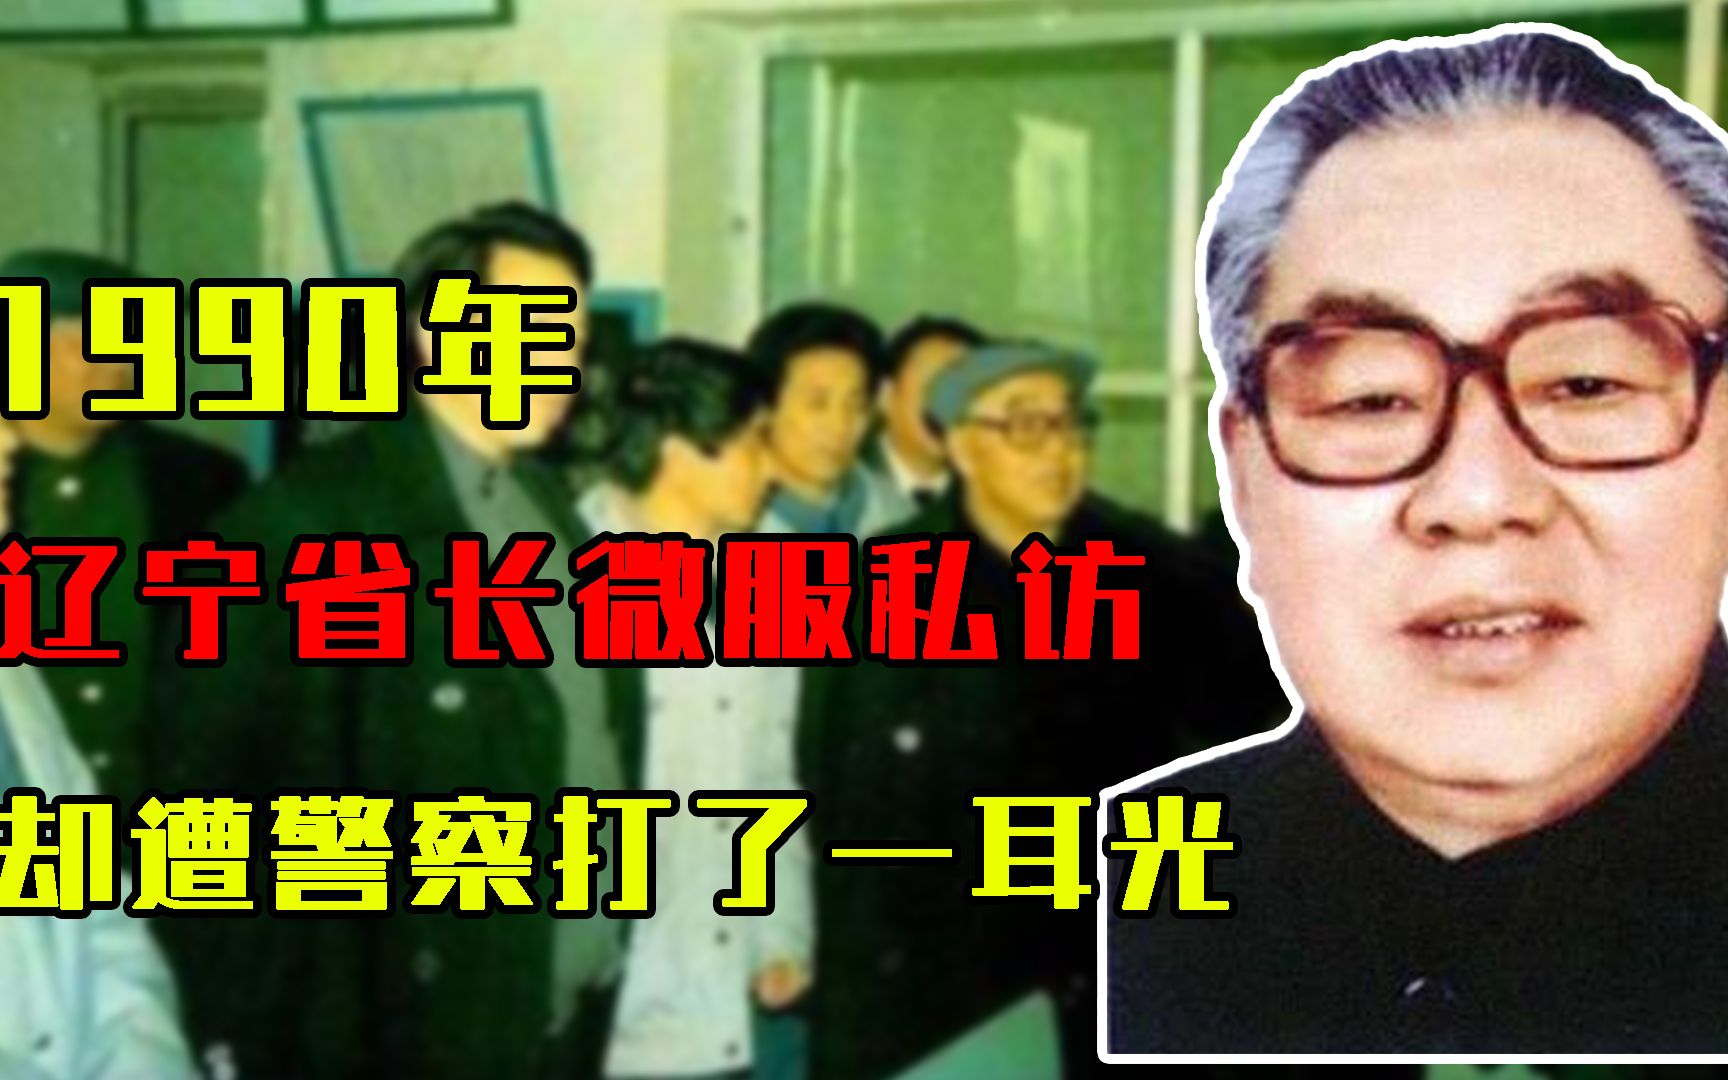 1990年，辽宁省长微服私访，却遭警察一耳光把眼镜打飞，结局如何？